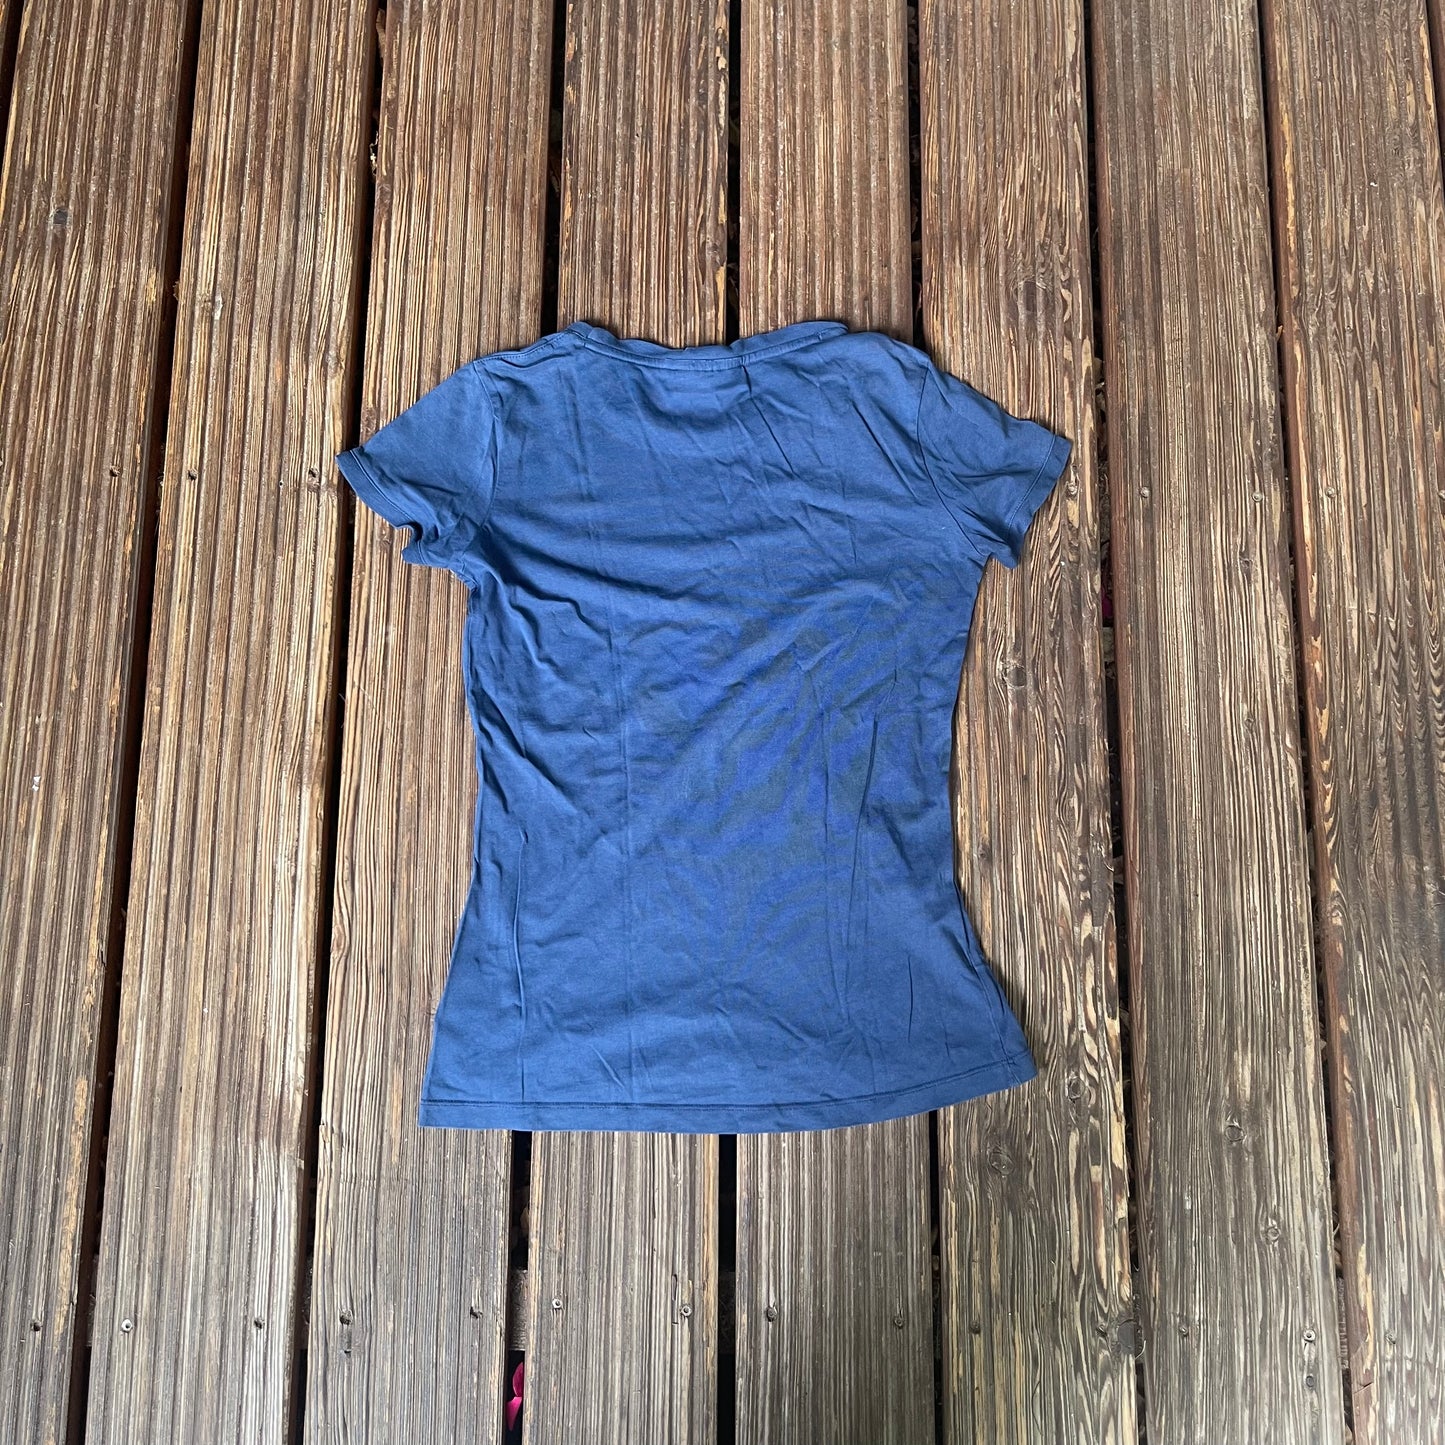 T-Shirt von Maloja (Damen S) Baumwolle blau "Soul in the woods"